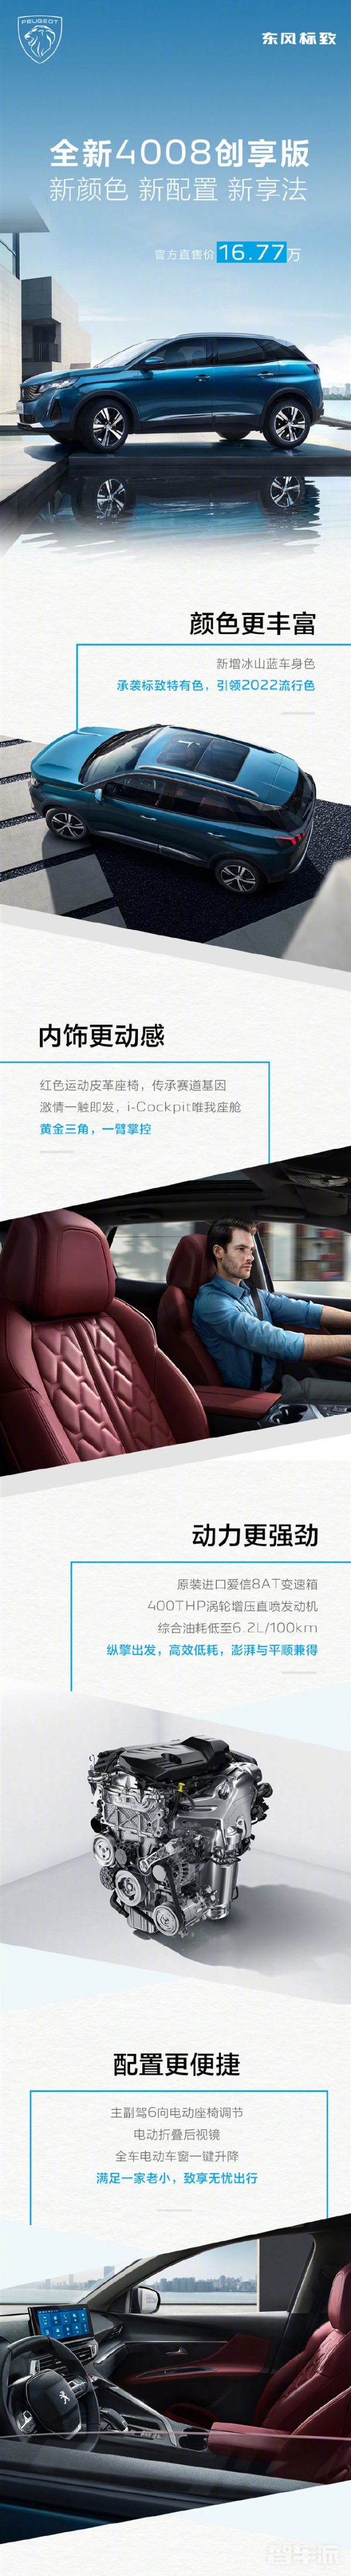 东风标致全新4008创享版上市新增蓝色车身16.77万元002131利欧股份